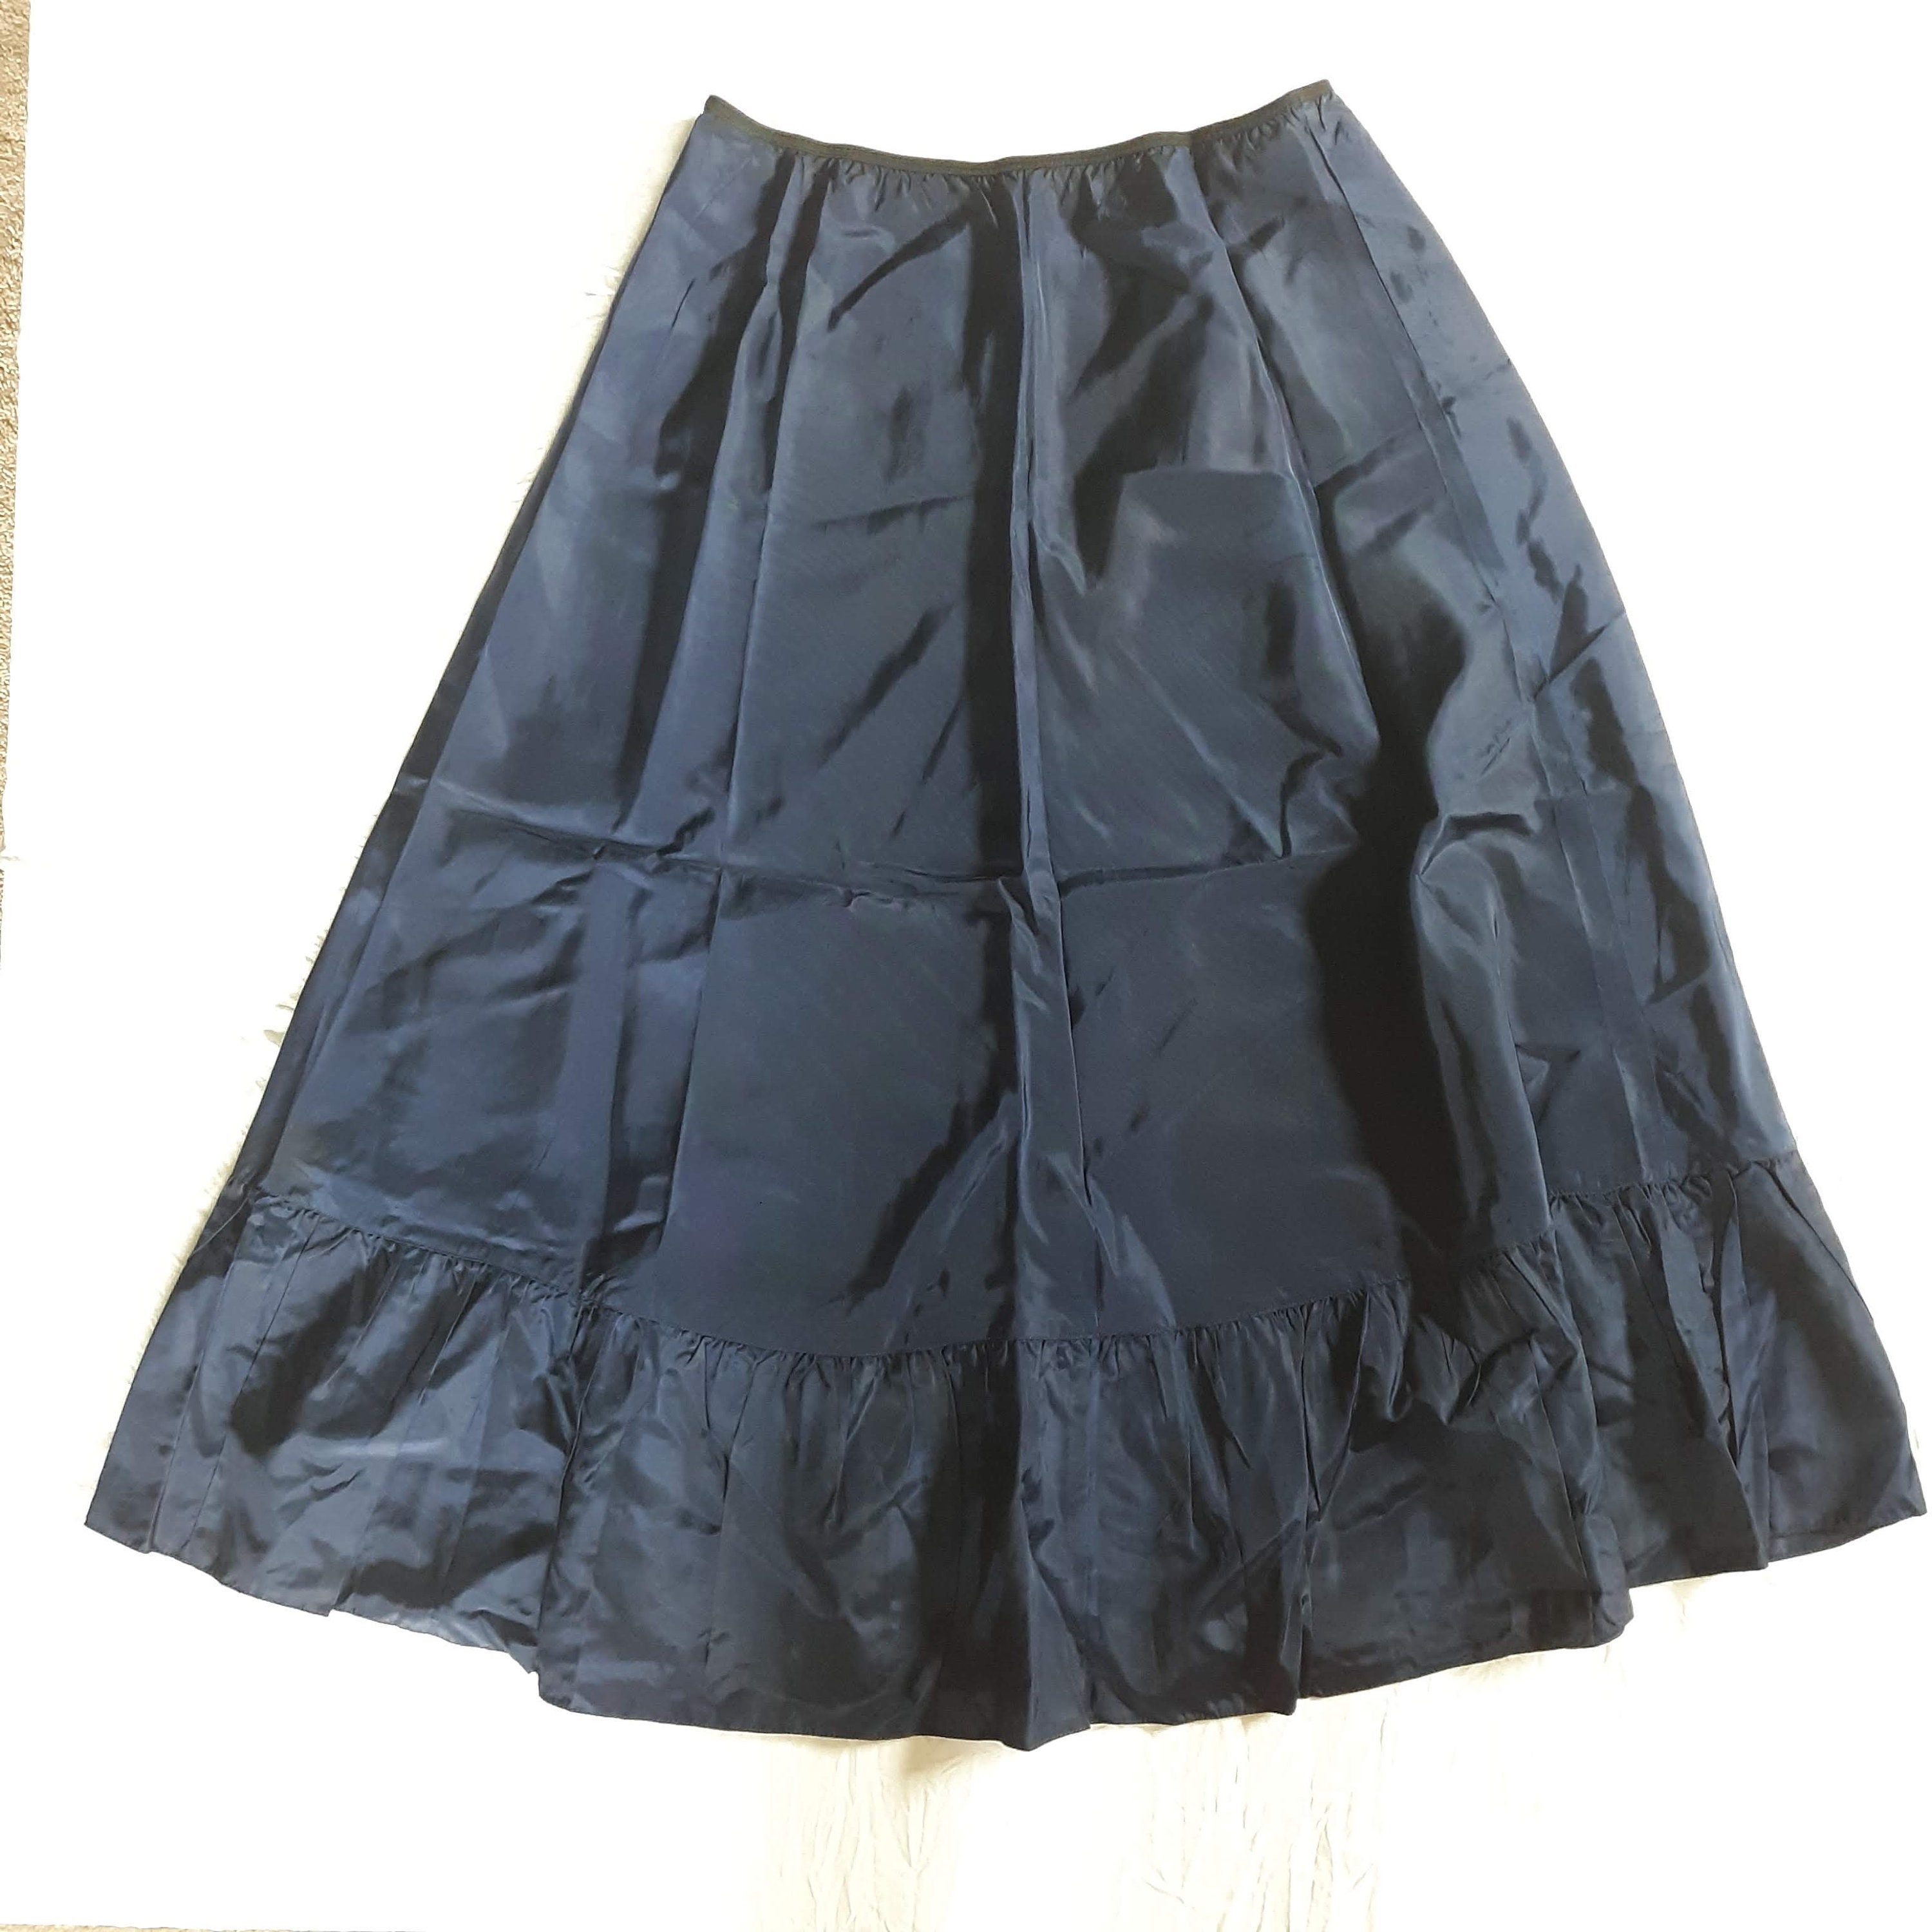 Navy Blue Petticoat 